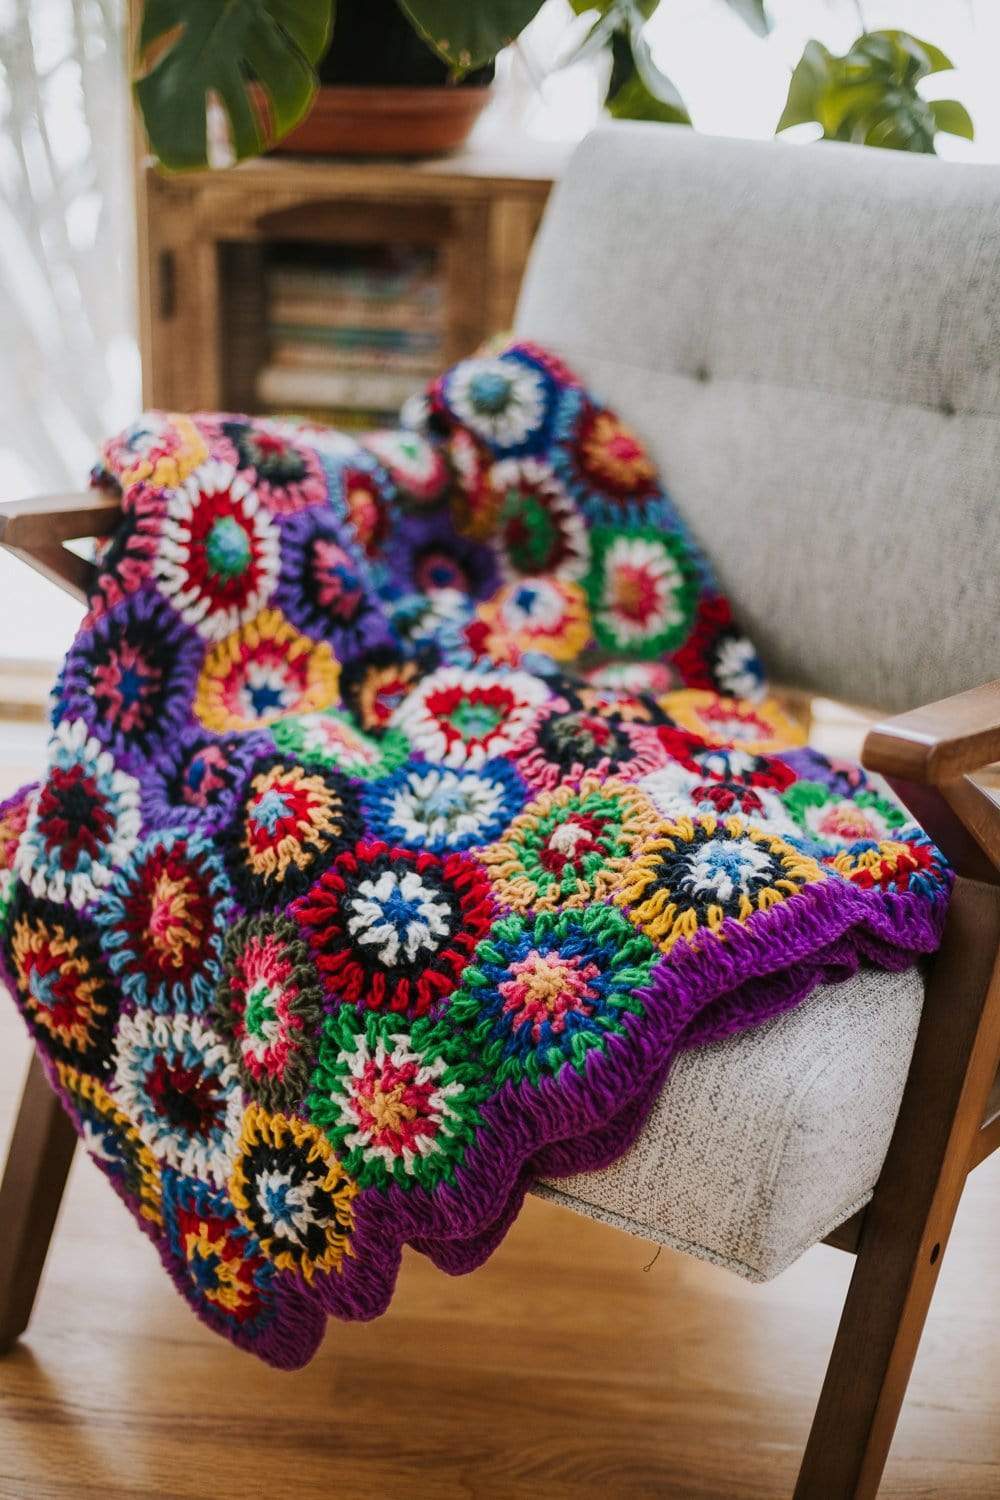 Healing & Support Pillow Crochet Kit